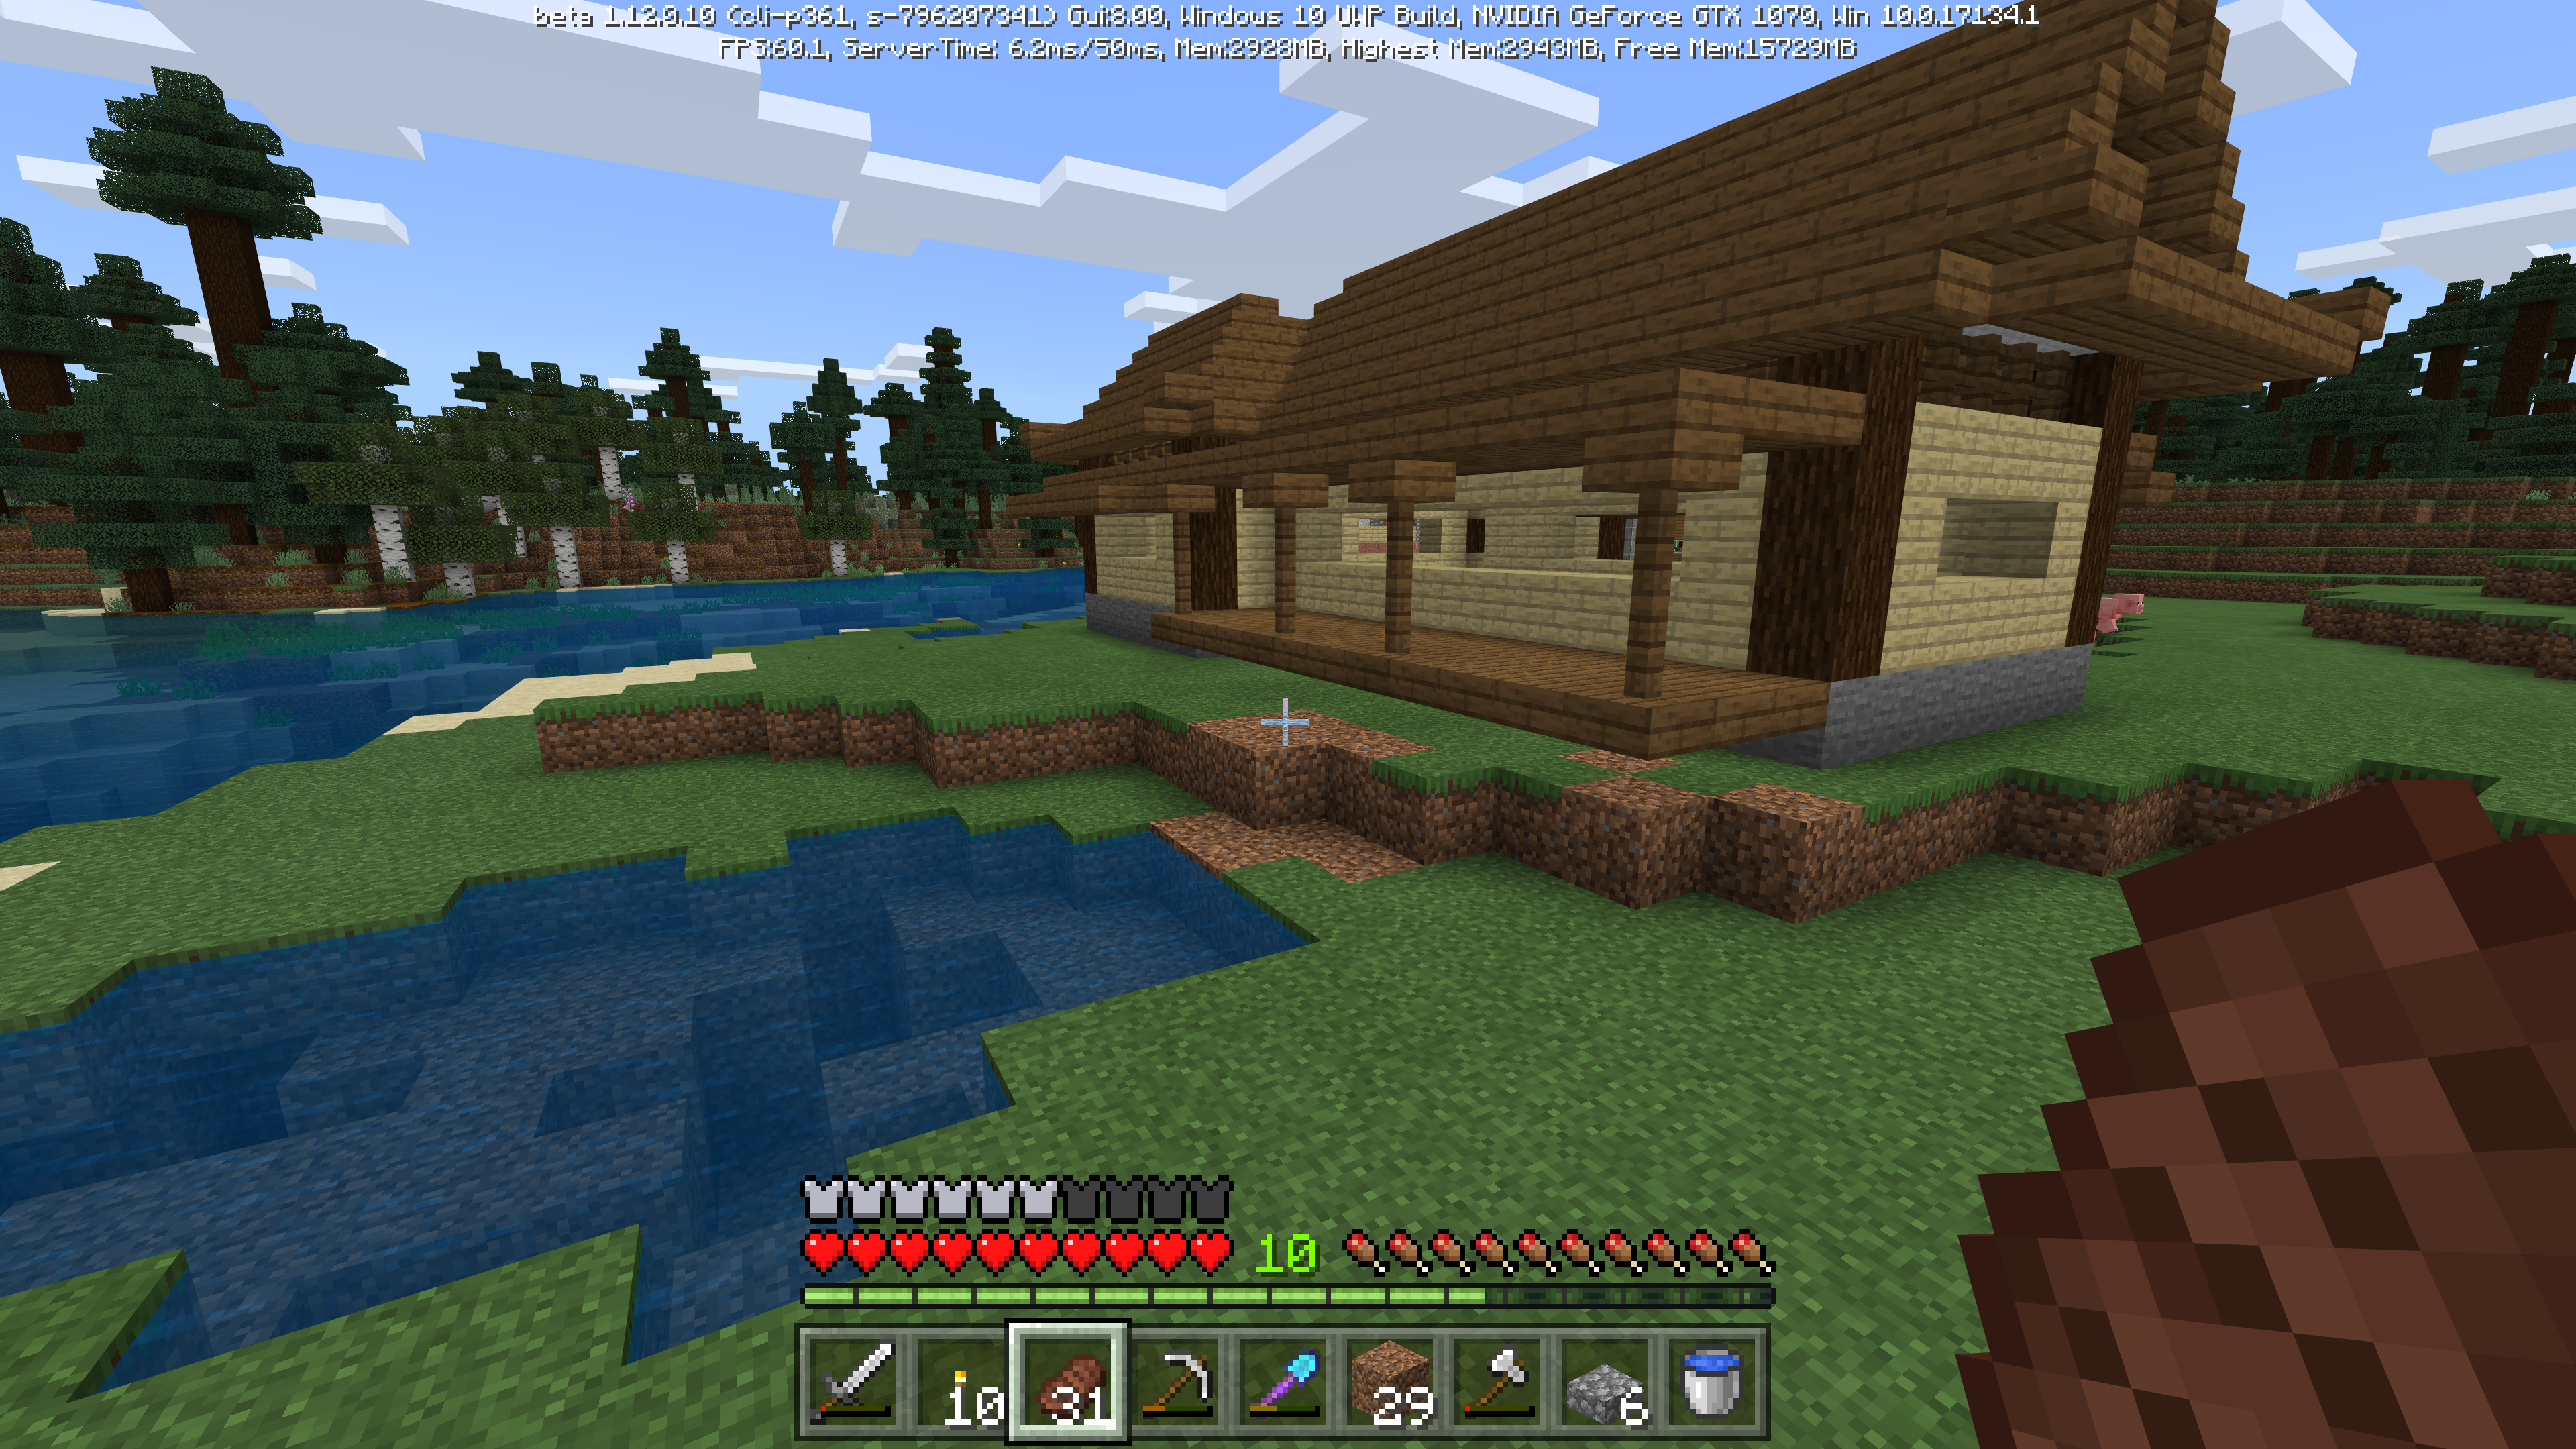 Minecraft 縁側の似合うお家を作りたい 初めての和風建築で四苦八苦 後編 Hiro流ゲームライフ